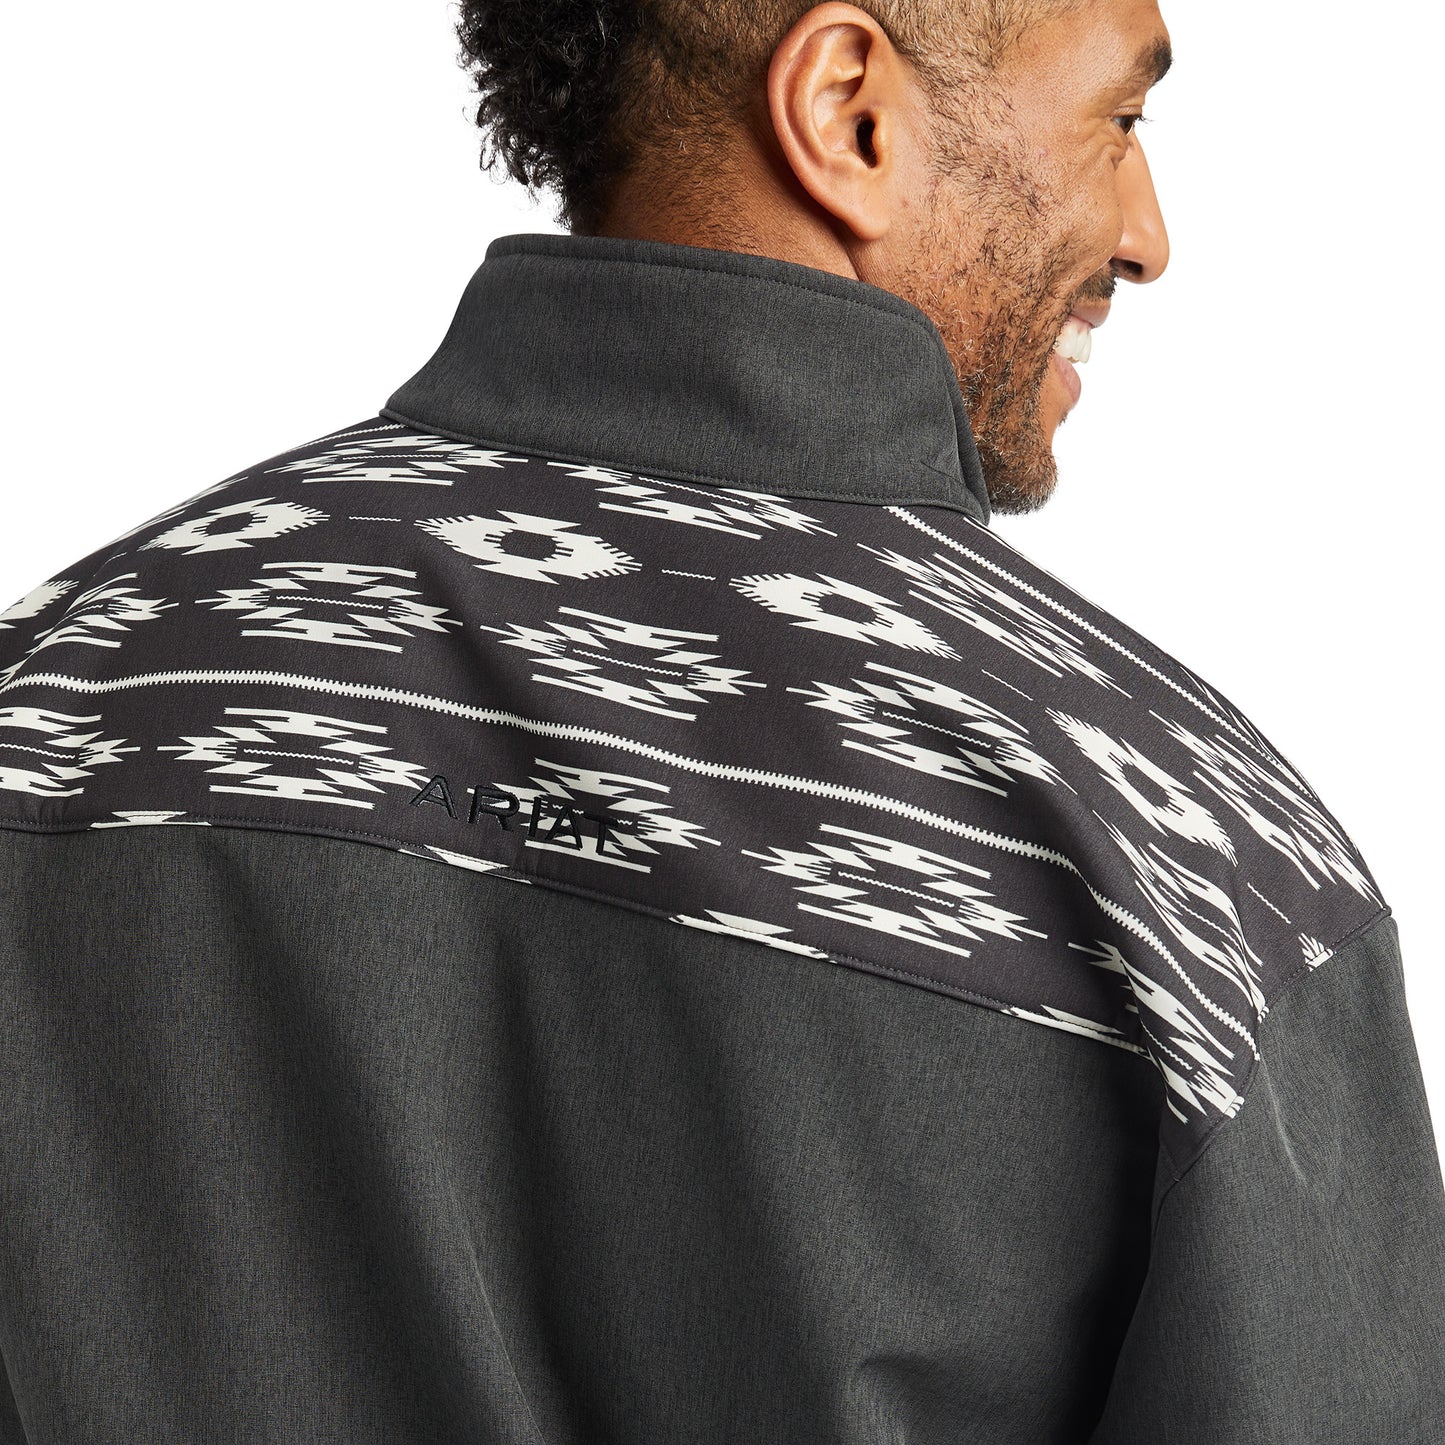 Ariat Men Vernon 2.0 Chimayo Softshell Jacket